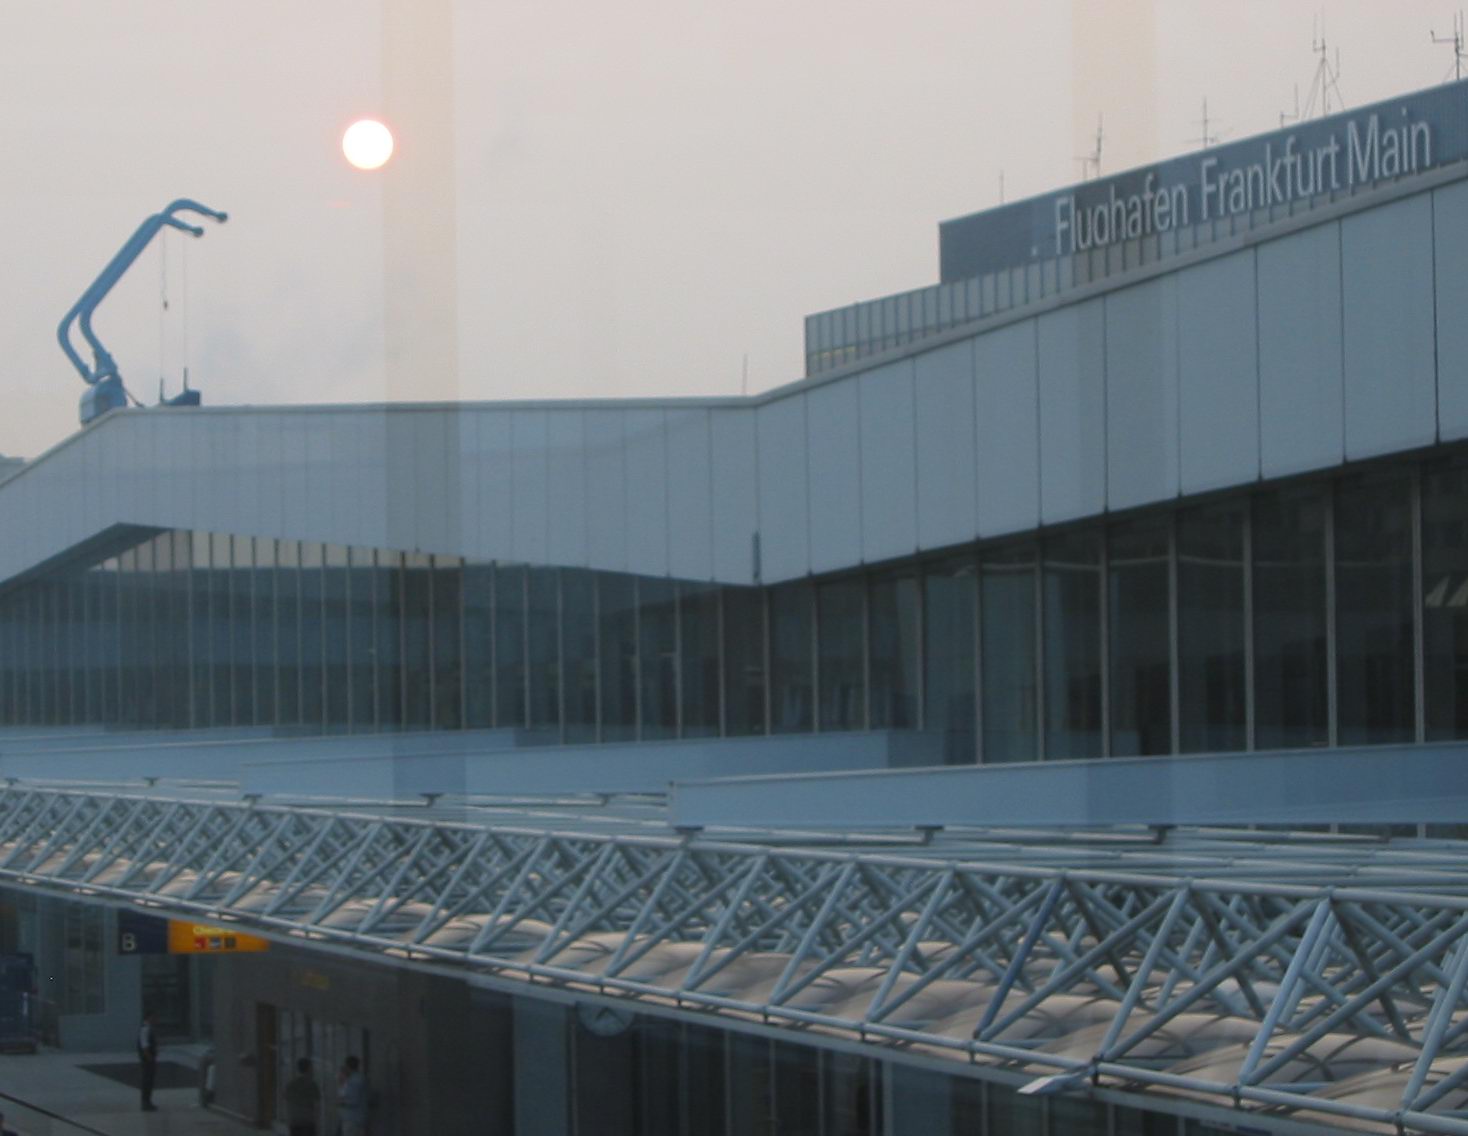 Arrival at dawn in Frankfurt Airport